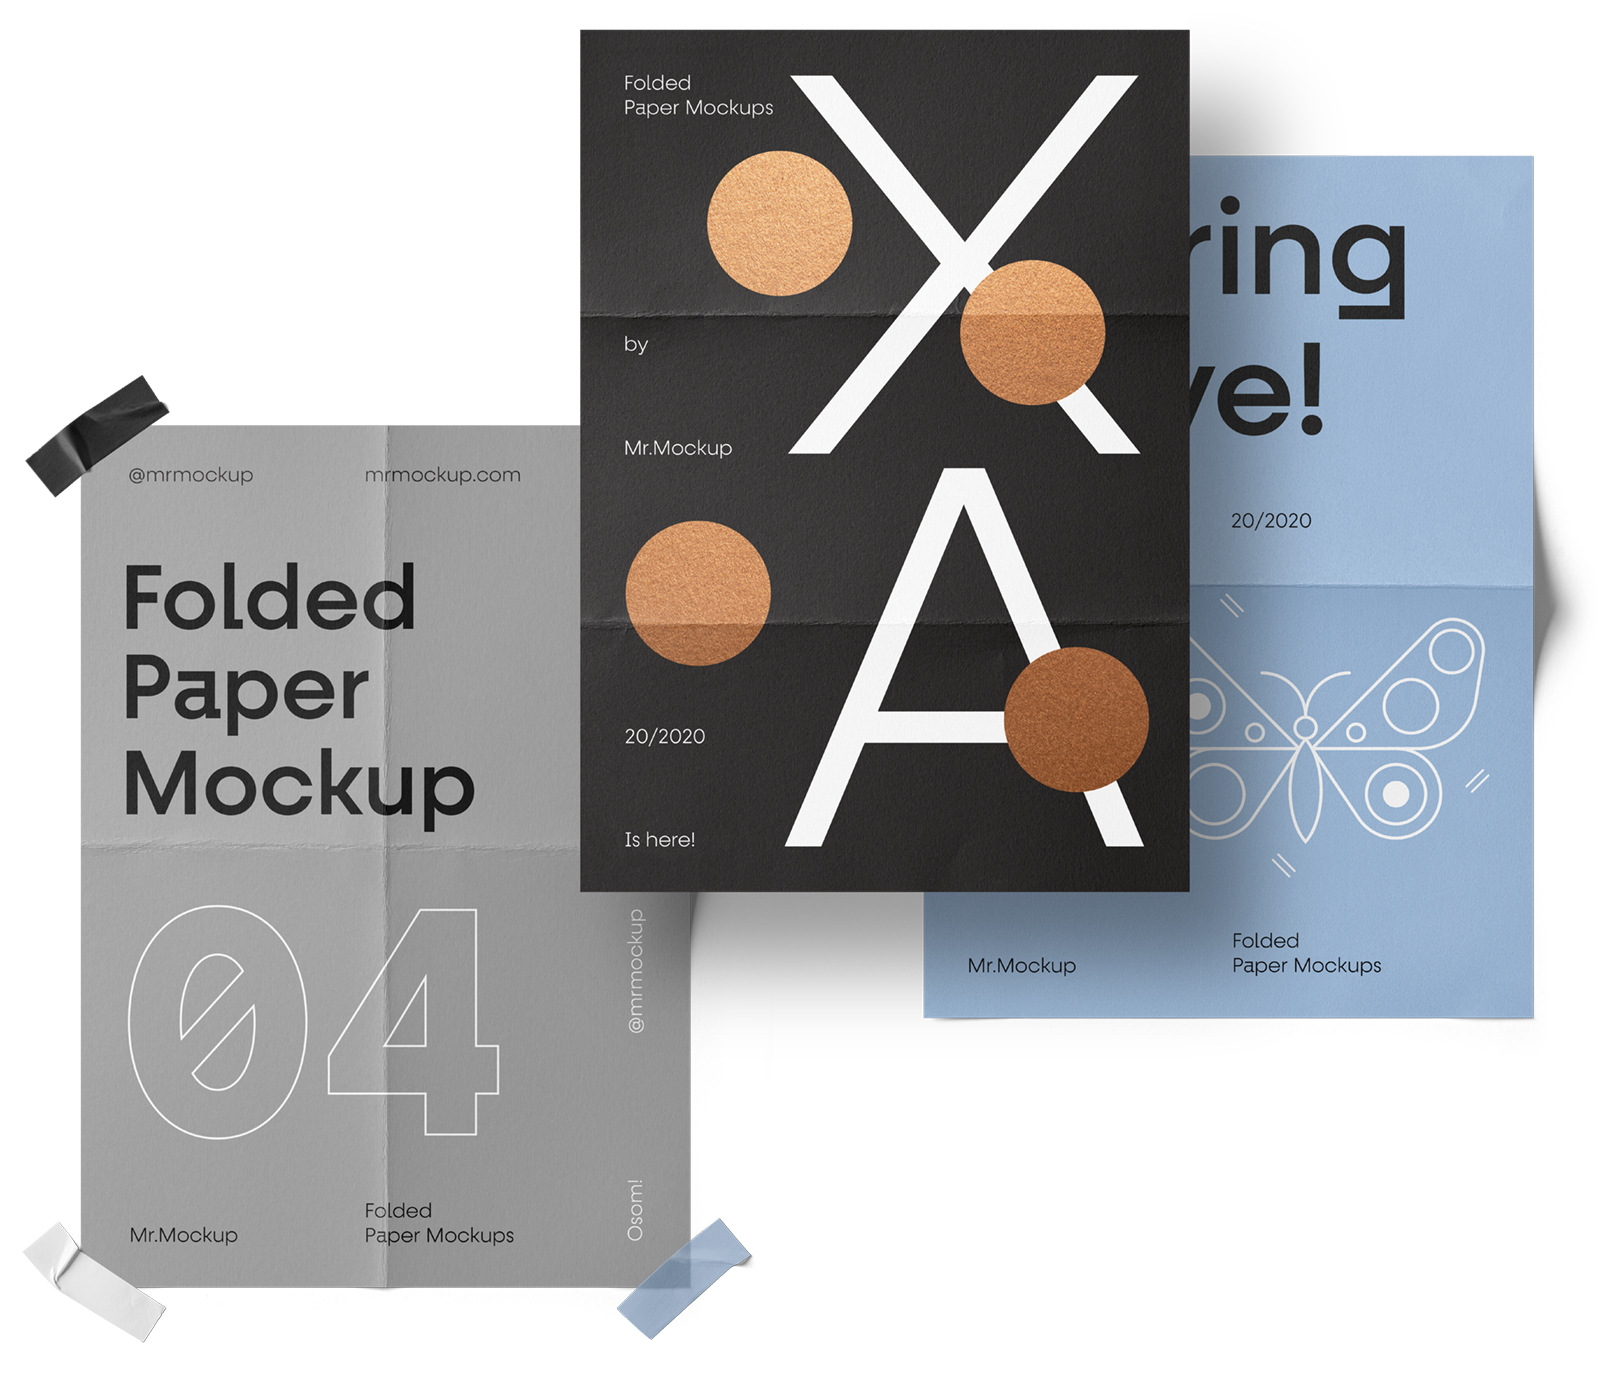 Download Folded Paper Mockups Psd Mockups Freebies Mr Mockup